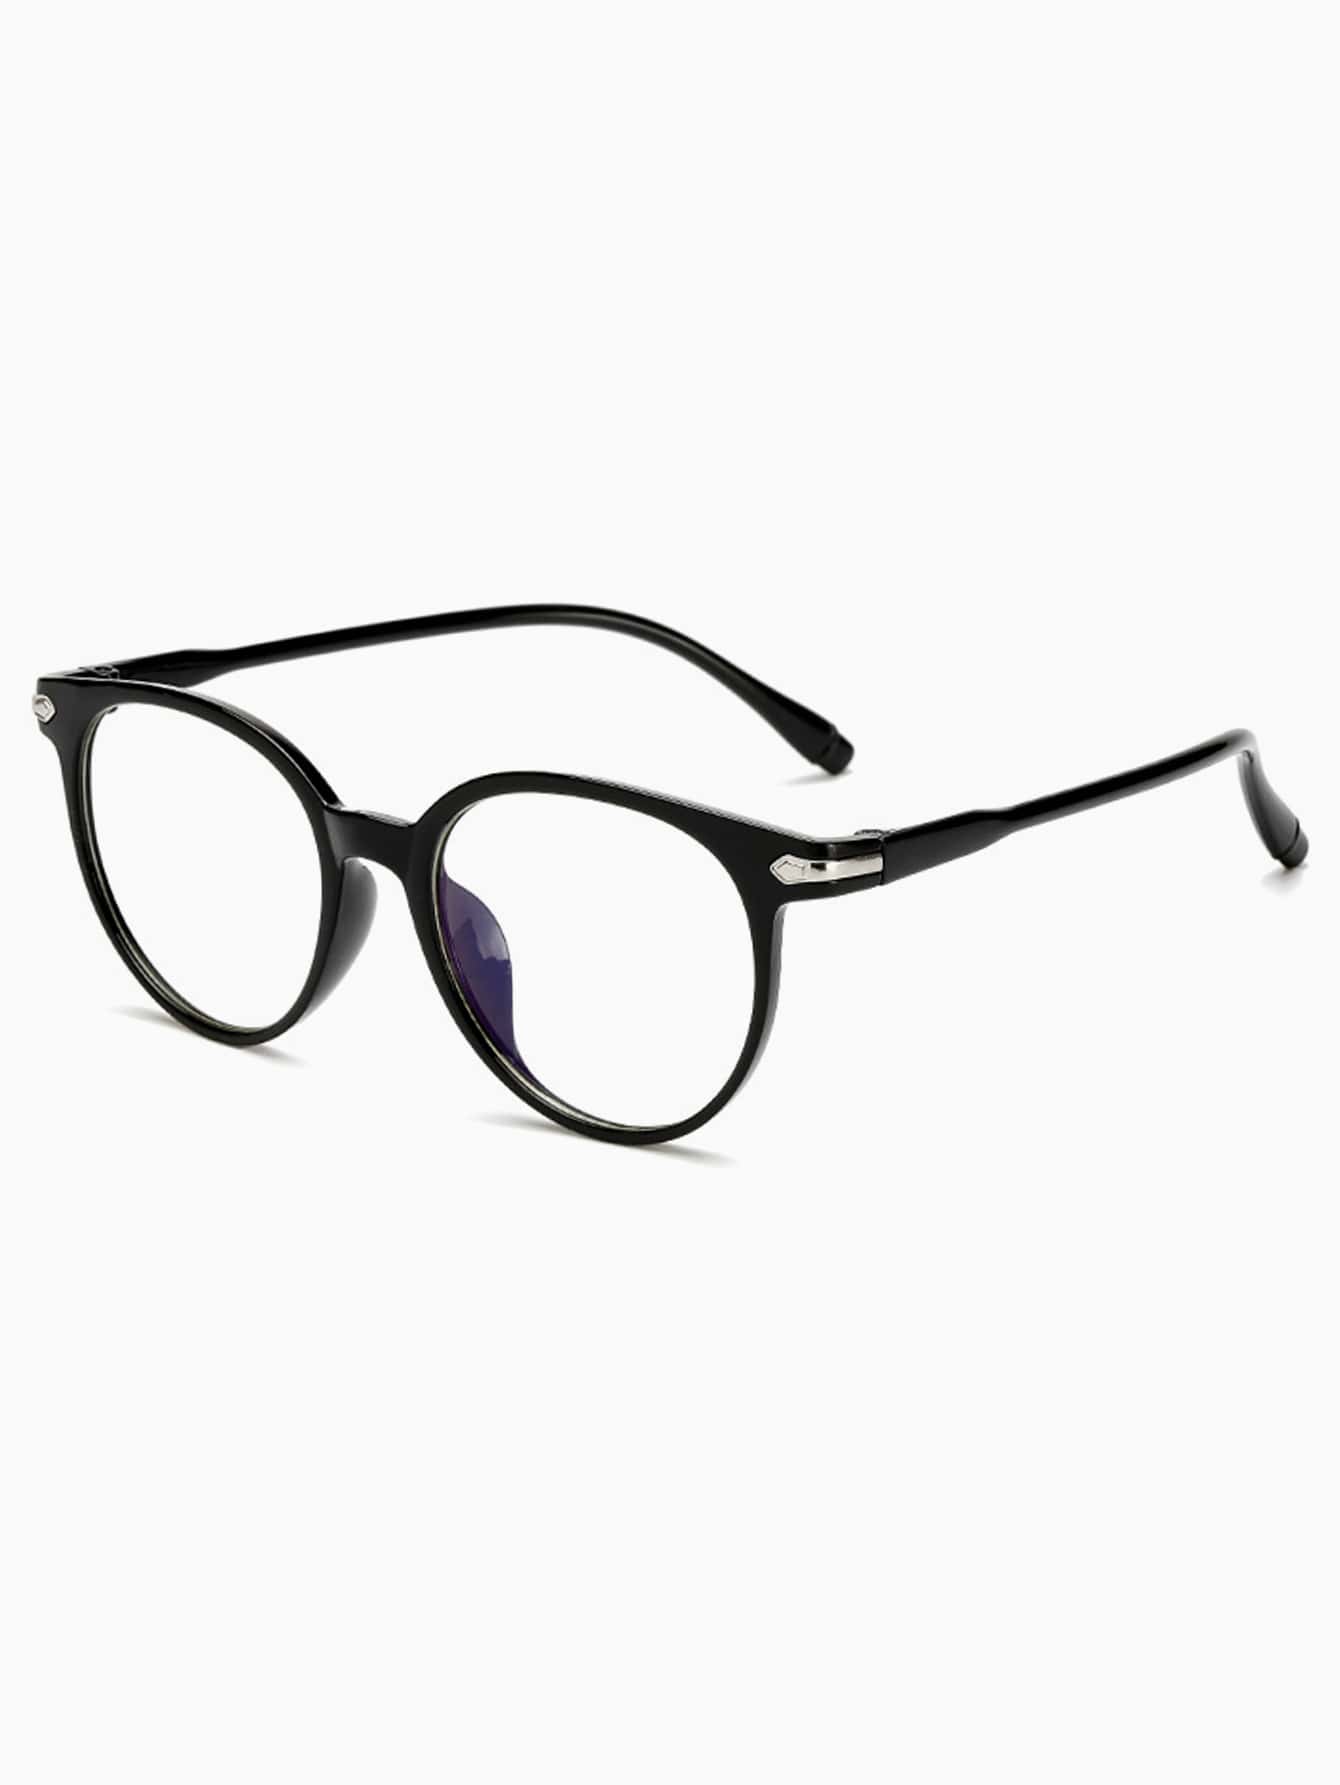 1шт акриловые винтажные круглые черные очки с плоскими линзами очки мужские и женские винтажные с квадратными и круглыми линзами оправа из ацетата оптические очки по рецепту для близорукости 2021